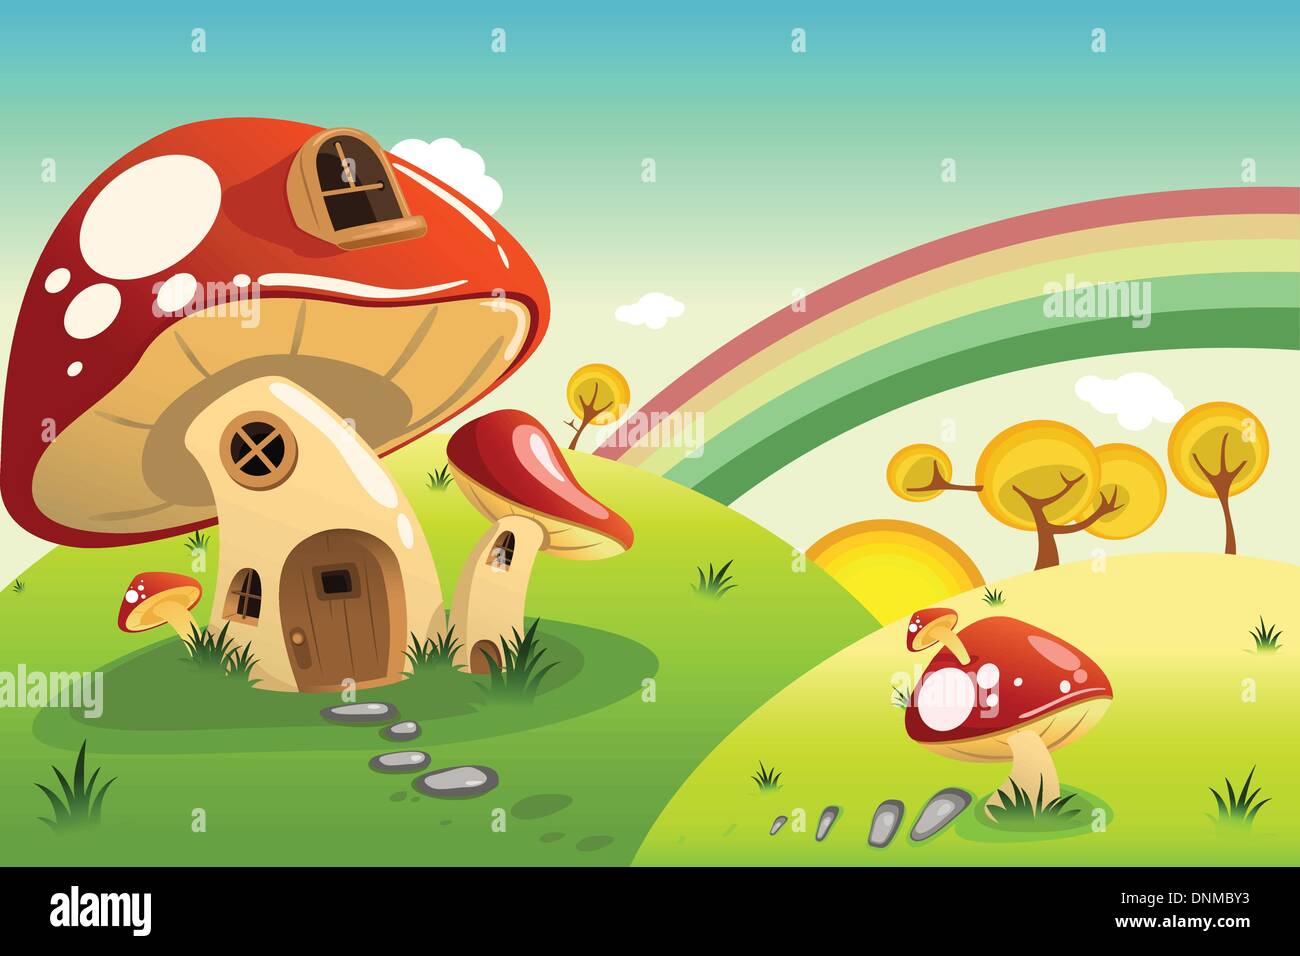 A vector illustration of mushroom fantasy house Stock Vector